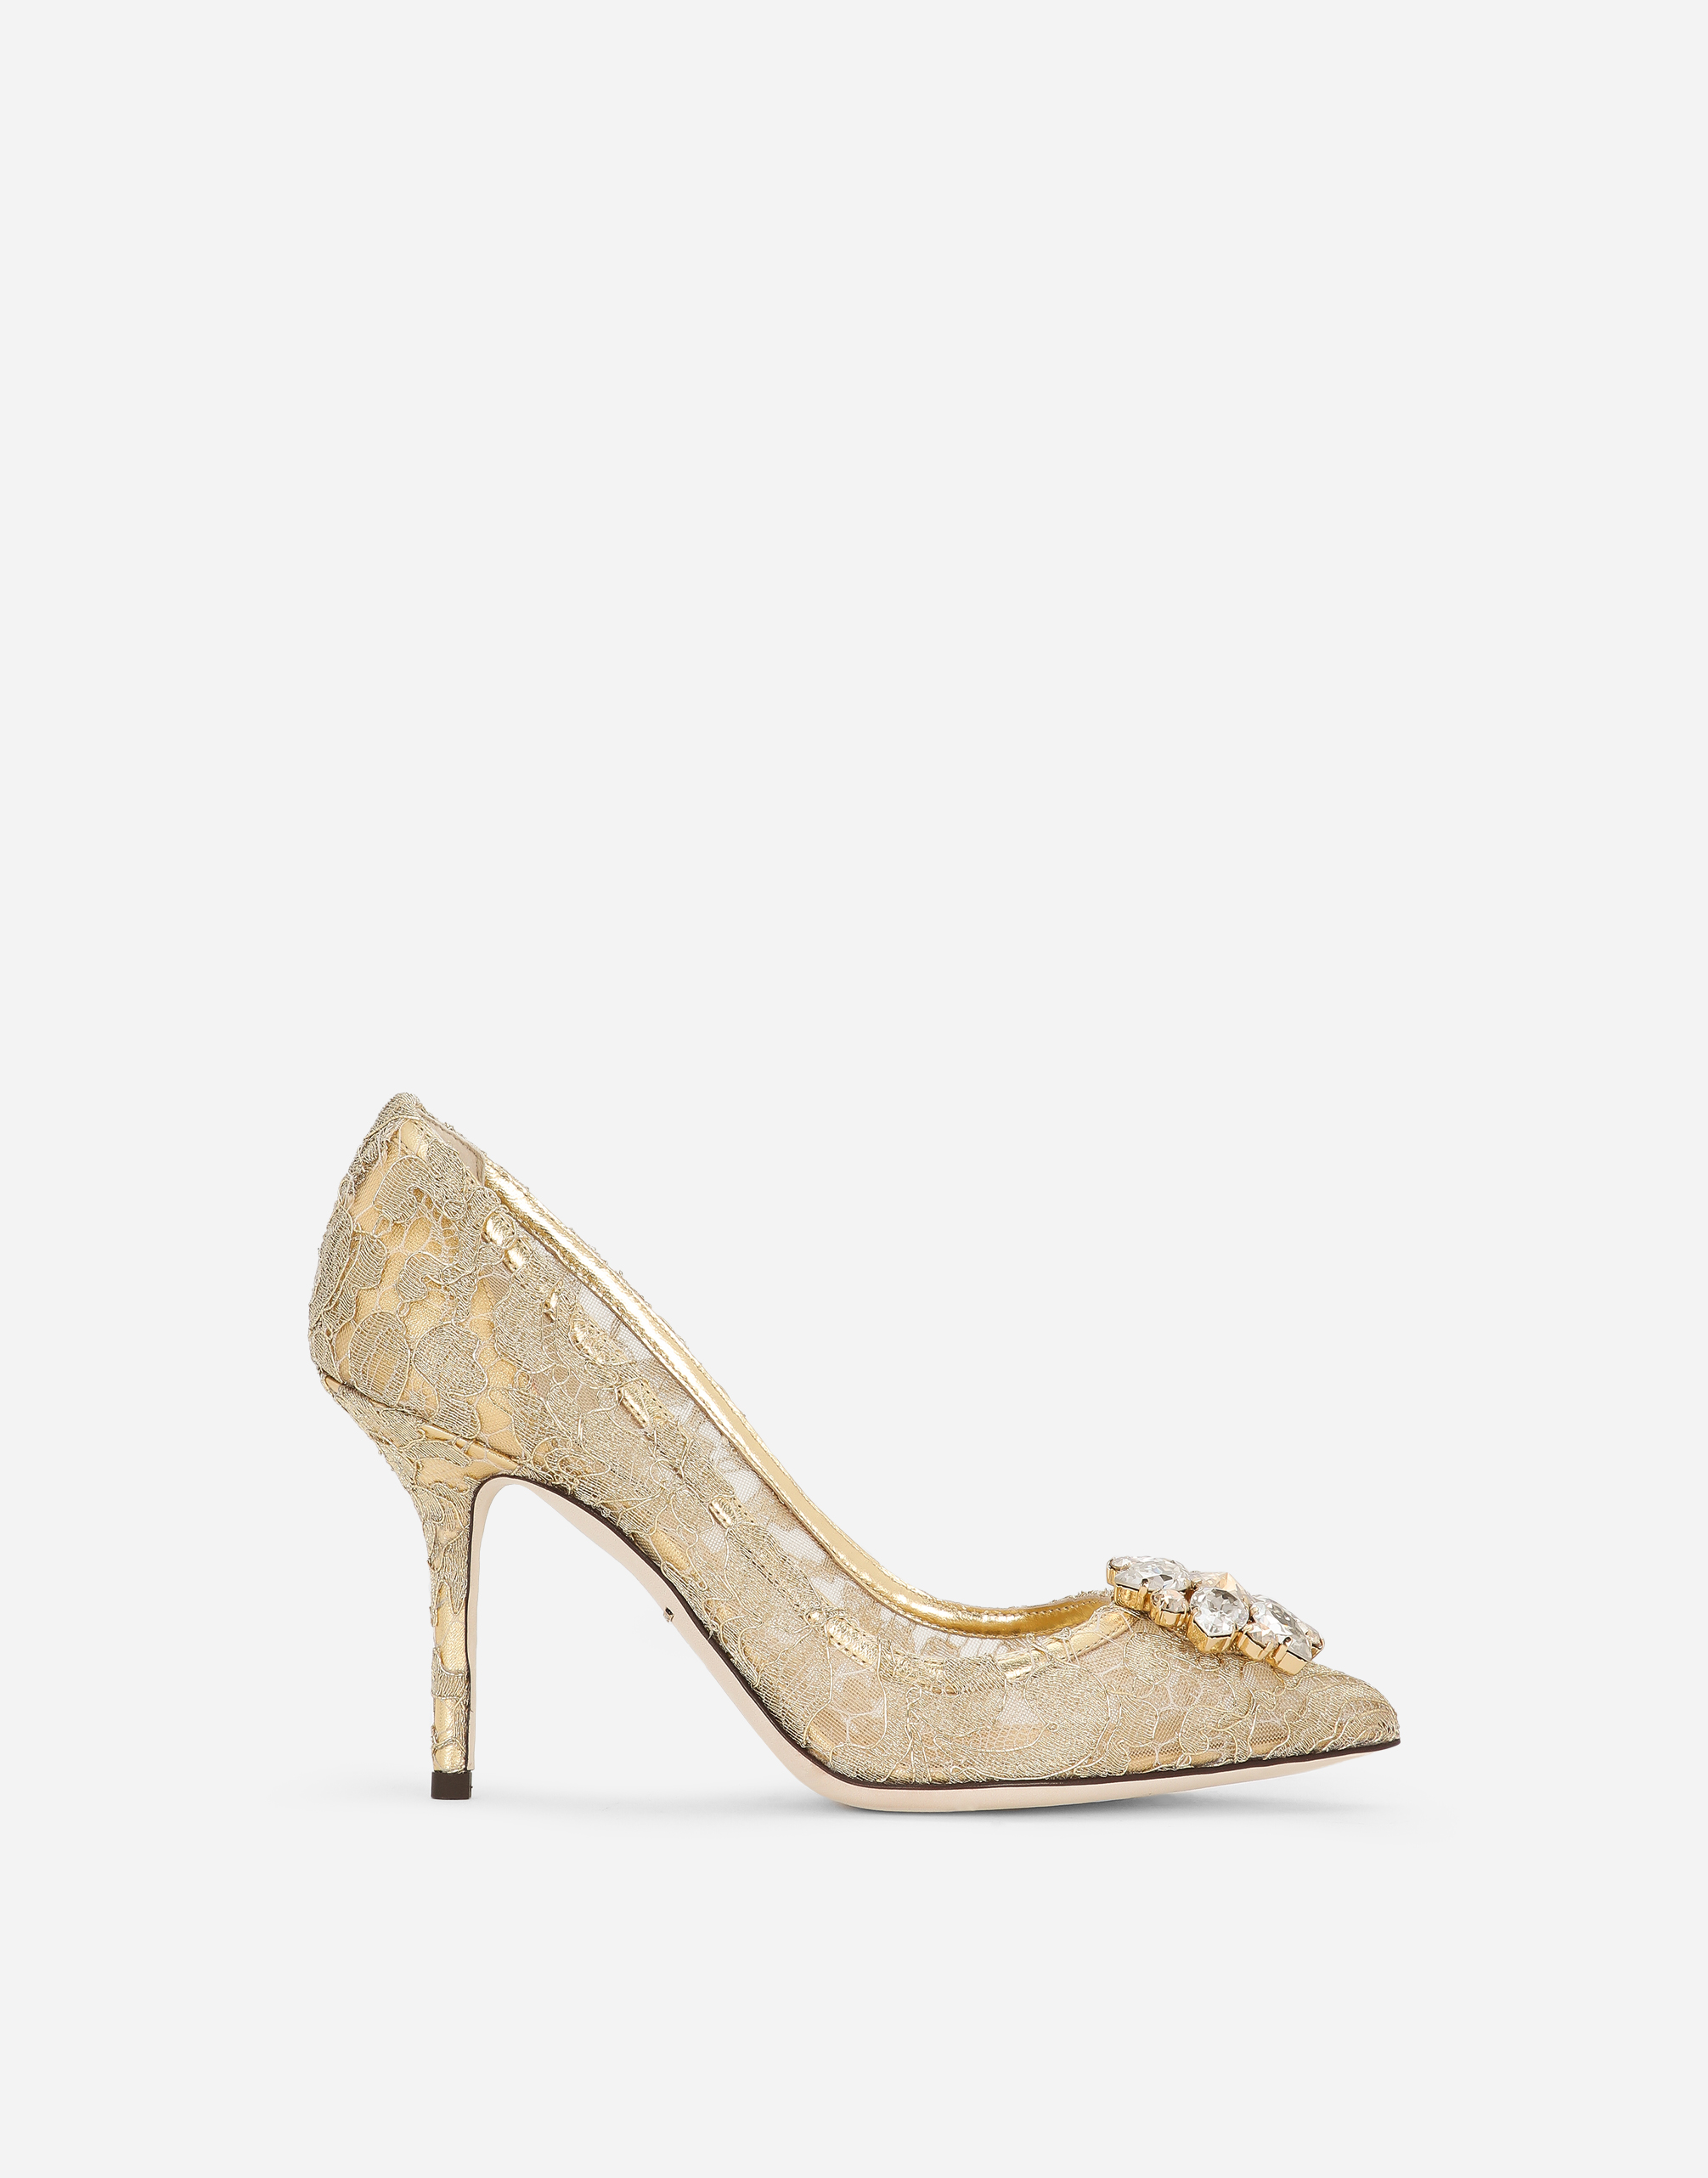 Dolce & Gabbana Sandals For Women Sale | Sendegaro